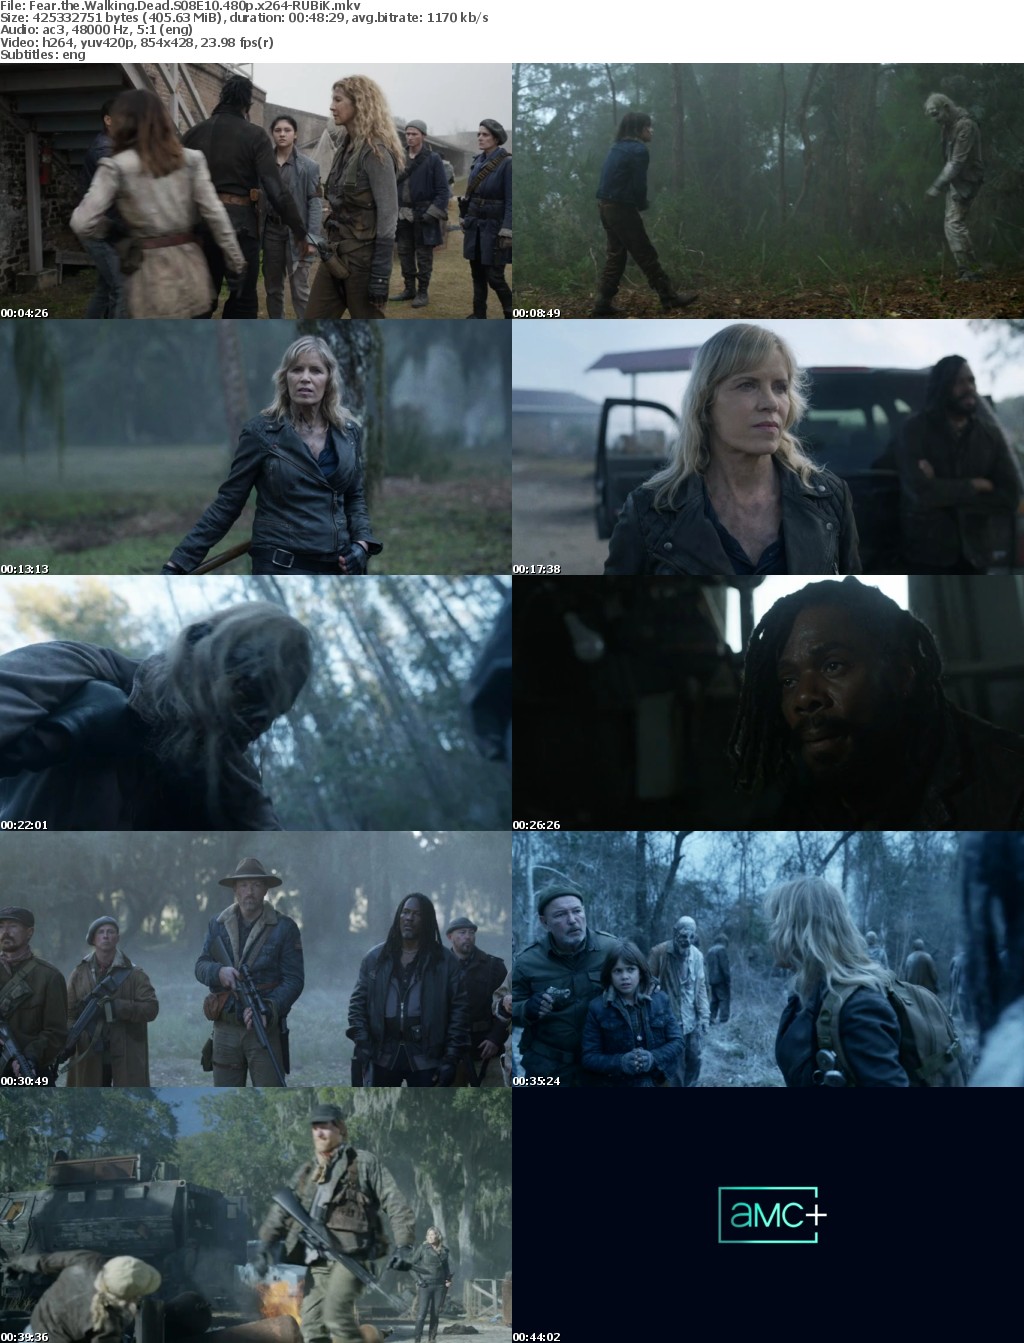 Fear the Walking Dead S08 480p x264-RUBiK